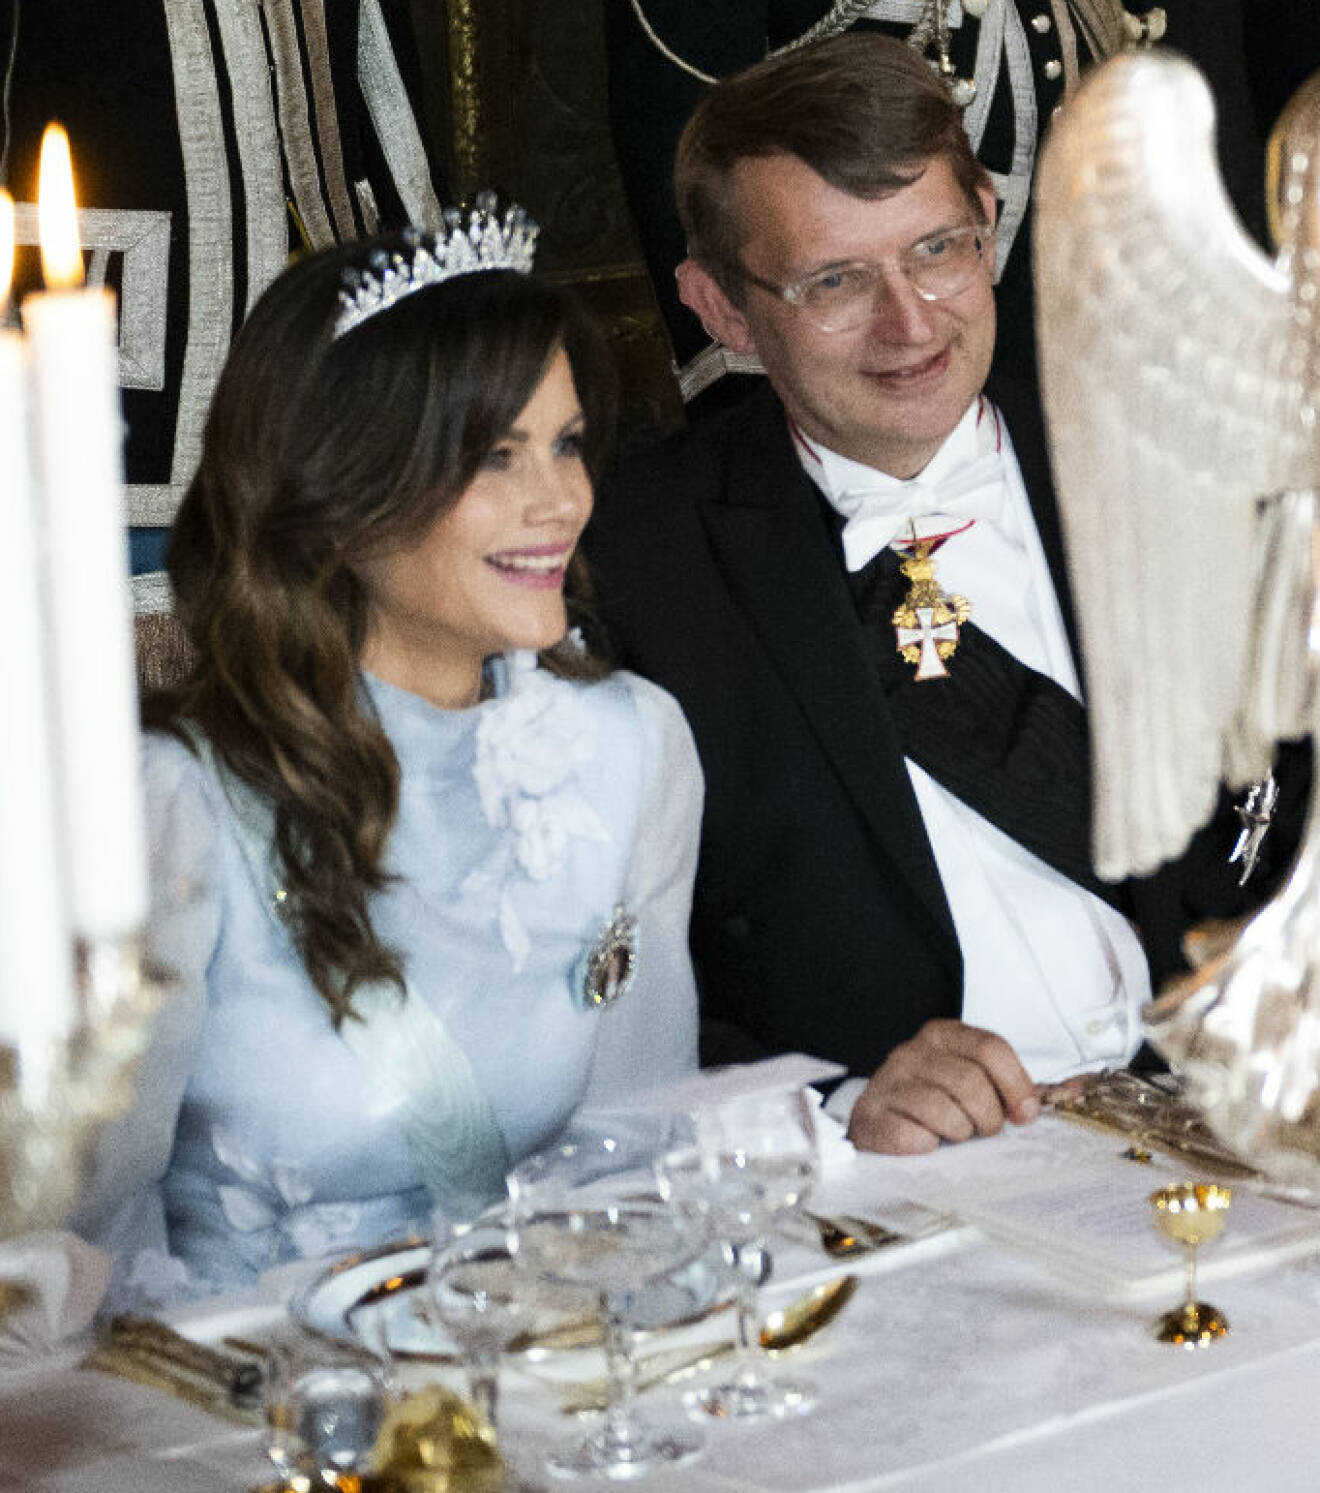 Prinsessan Sofia med sin bordsherre: Danmarks försvarsminister Troels Lund Poulsen